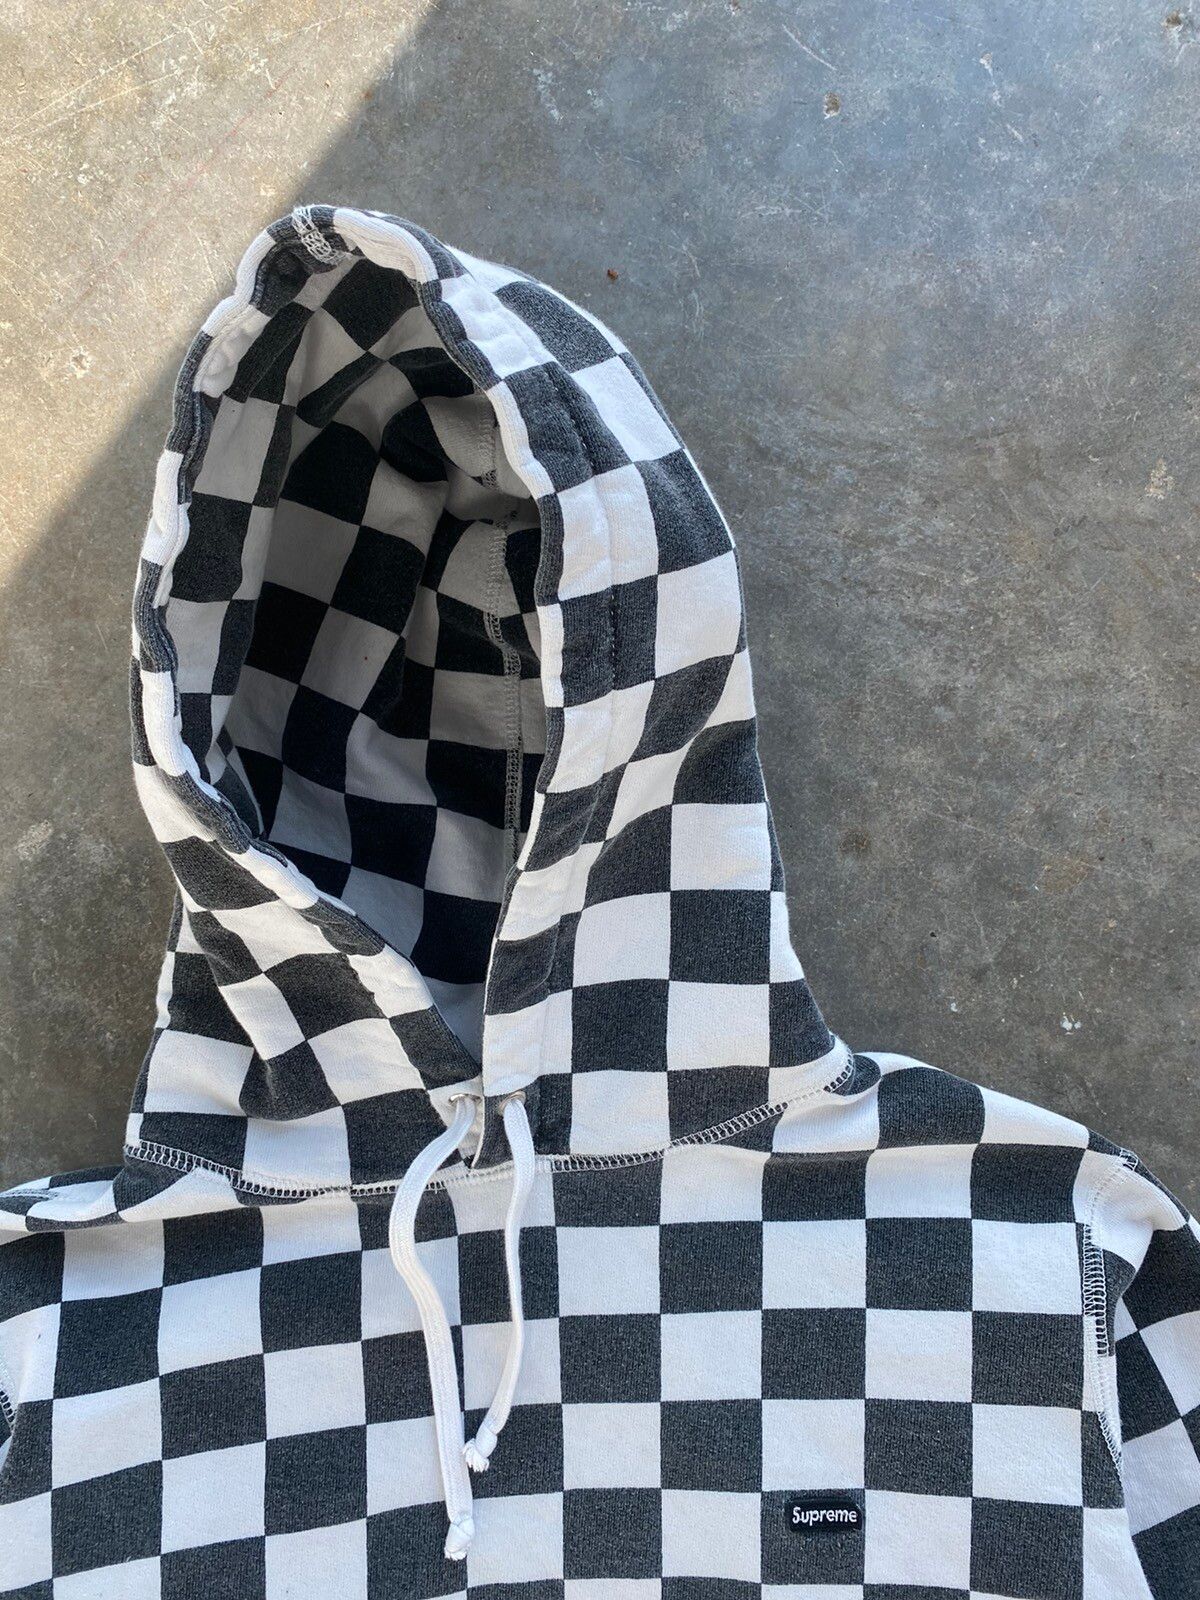 Supreme Supreme Checkered Mini Box Logo Hoodie Black White Medium ❄️ |  Grailed